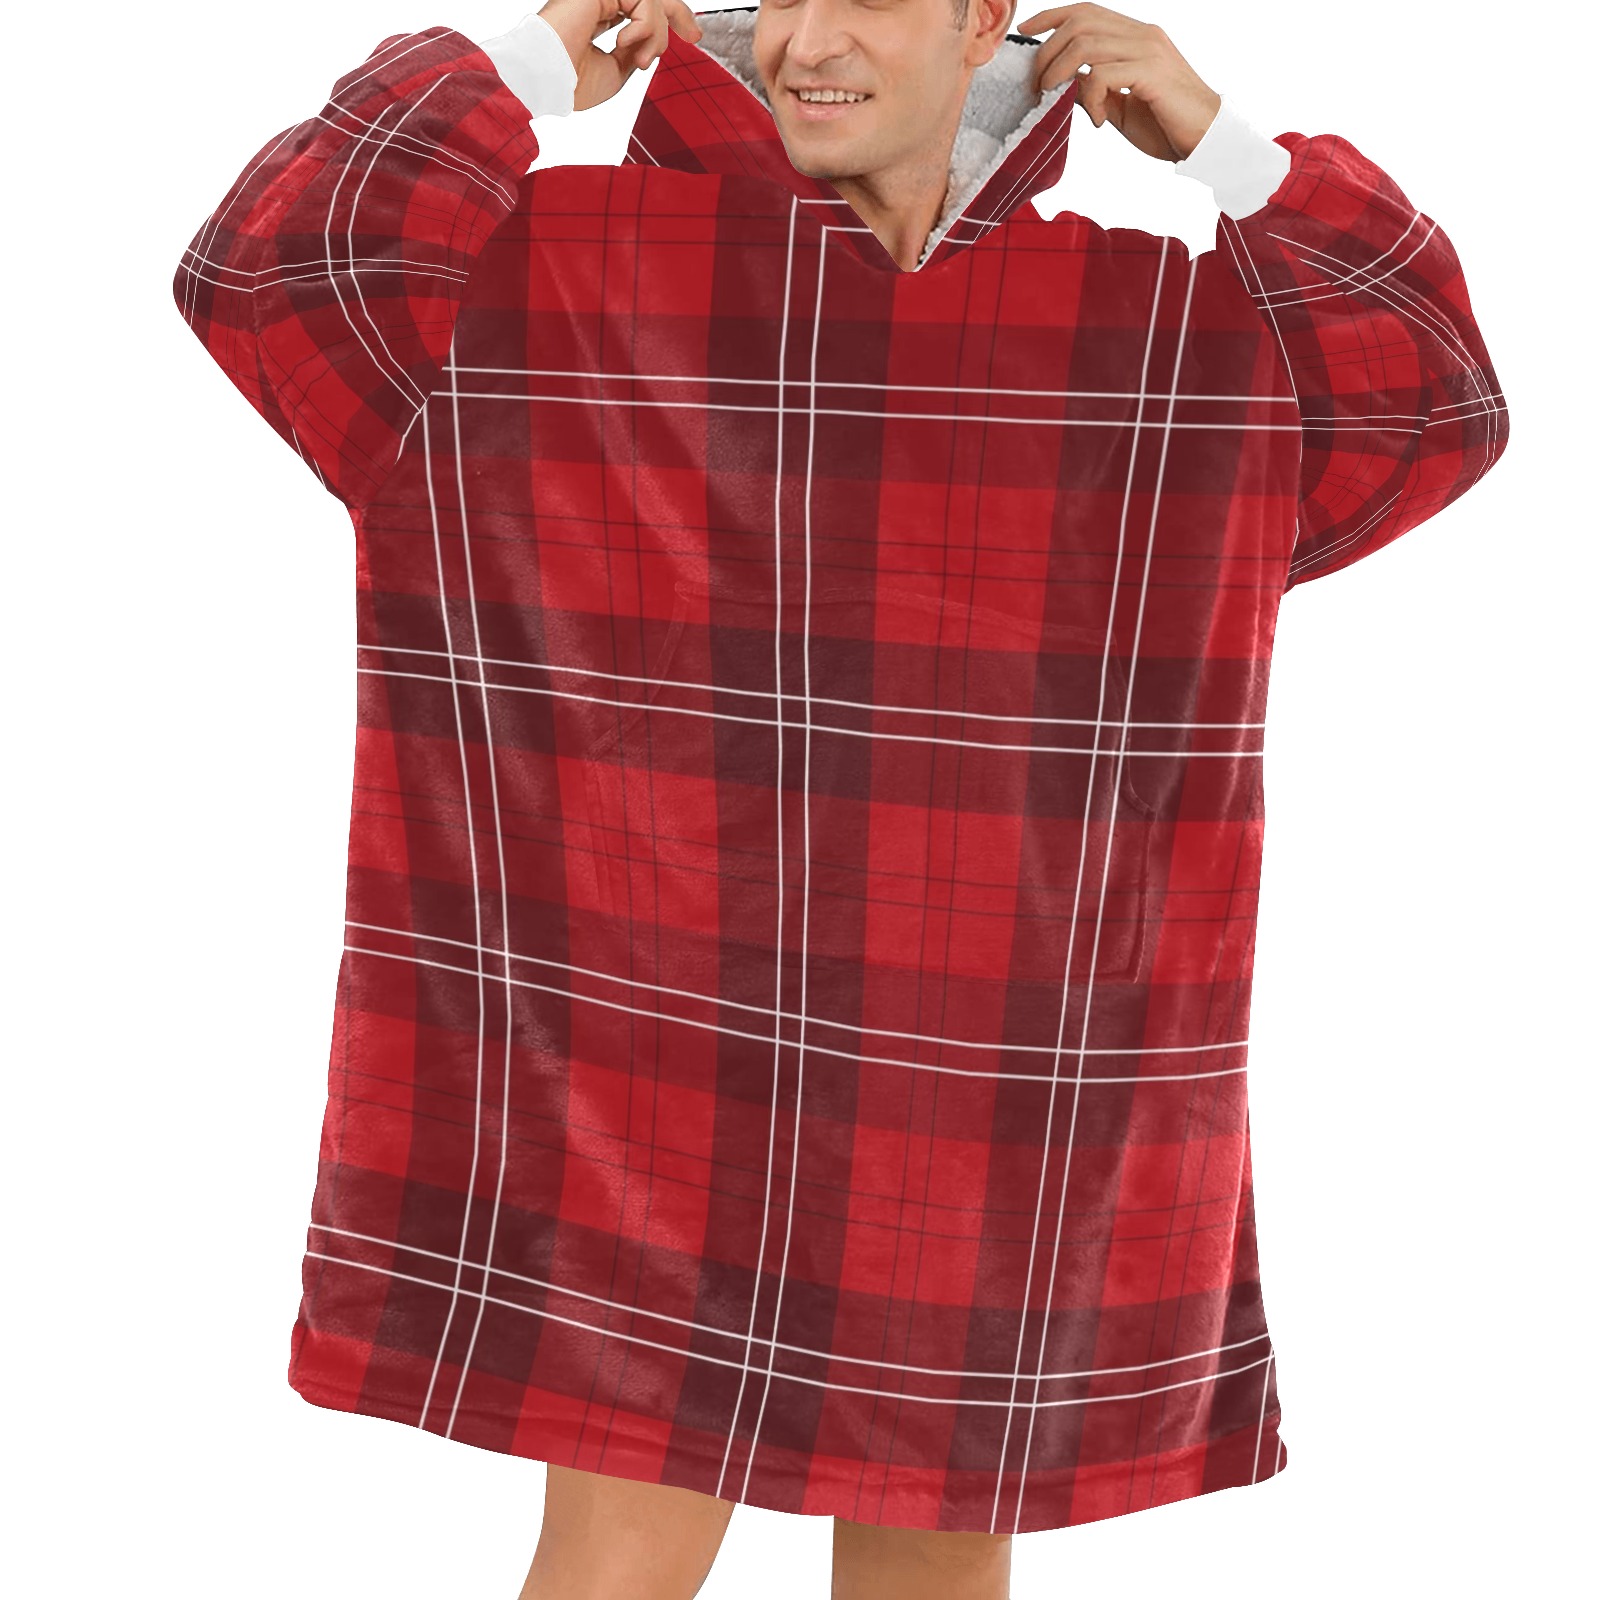 Red Tartan Blanket Hoodie for Men